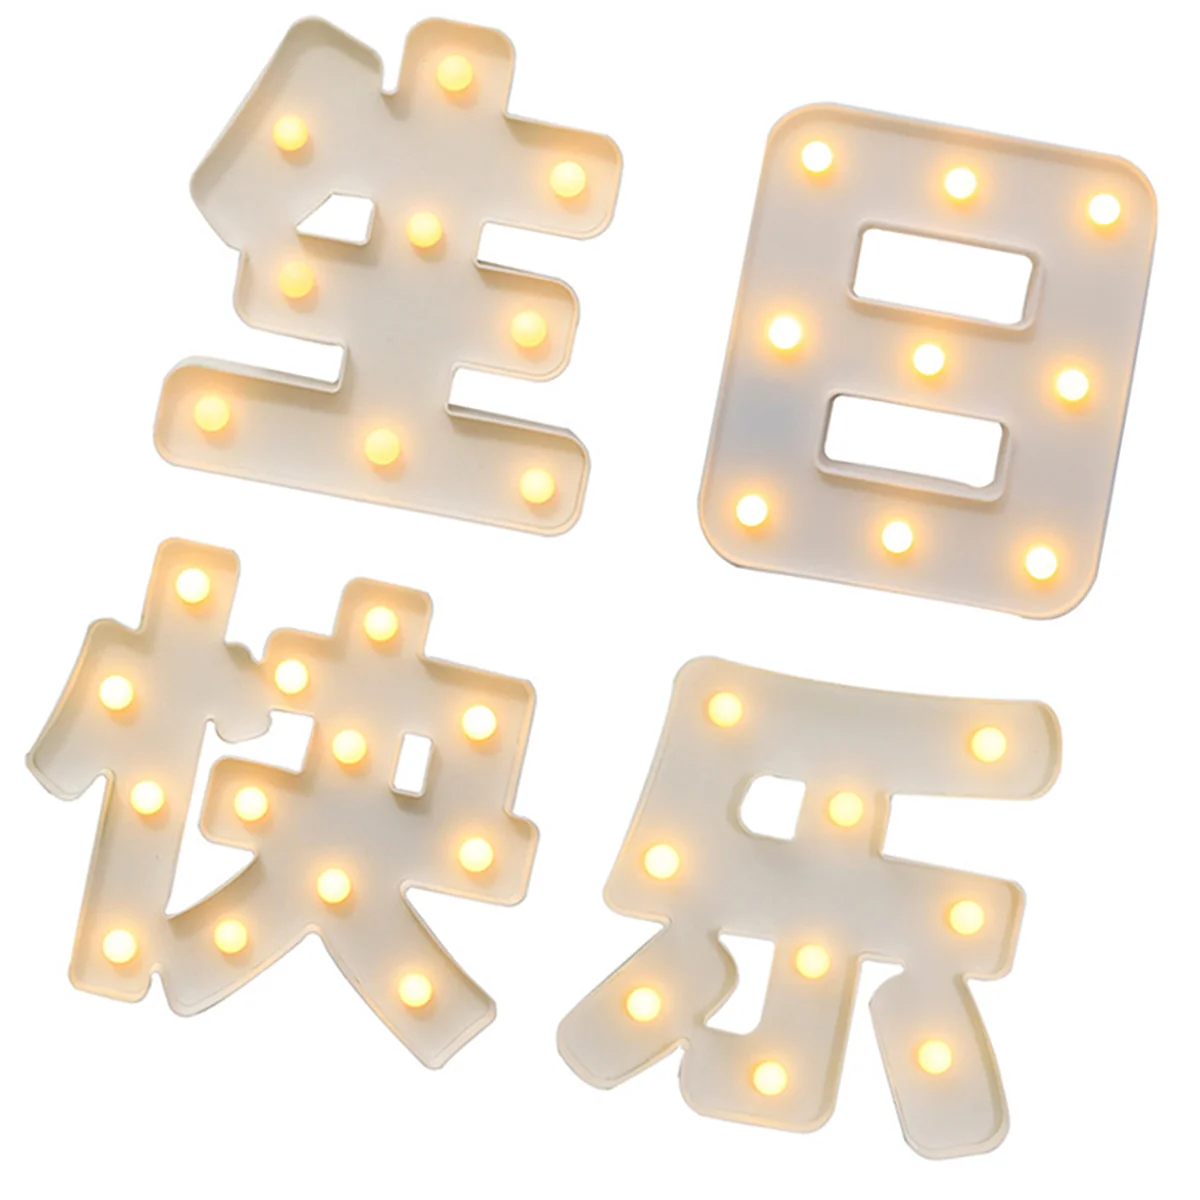 

1 комплект светодиодных ламп, украшение китайских слов, шикарные украшения на день рождения, праздничные декорации